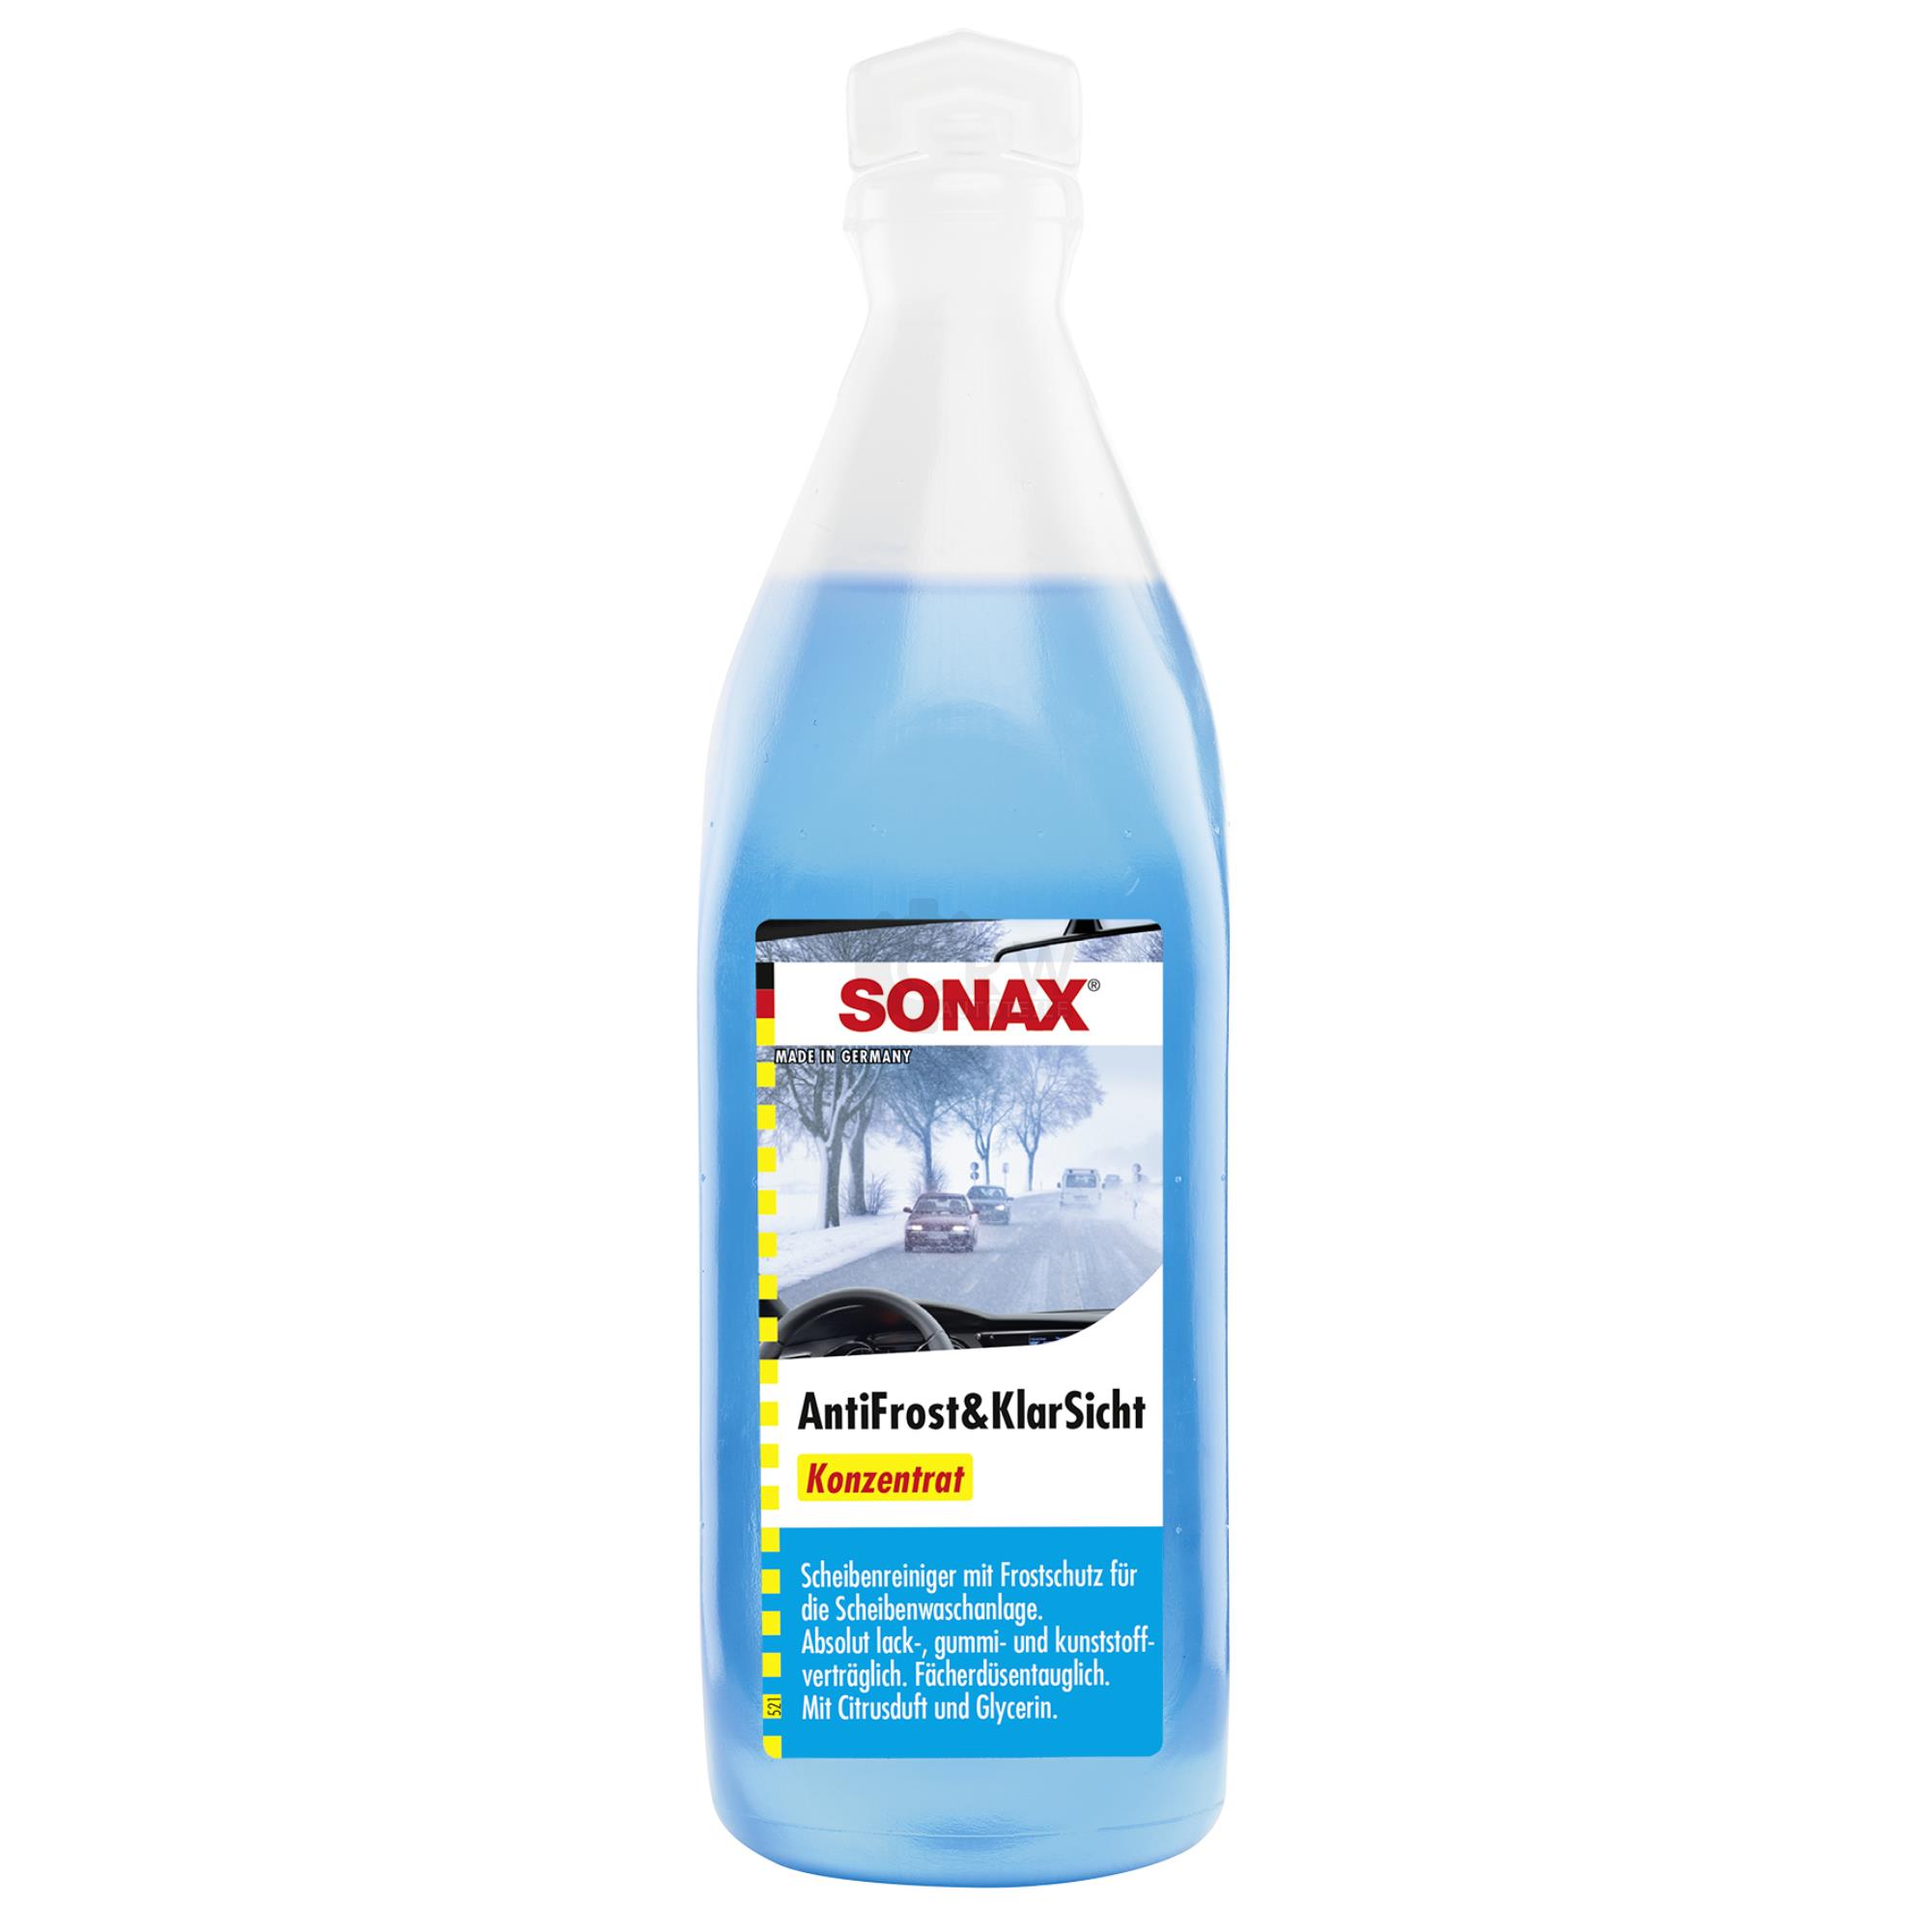 SONAX AntiFrost&KlarSicht Konzentrat Frostschutz Citrusduft 250 ml